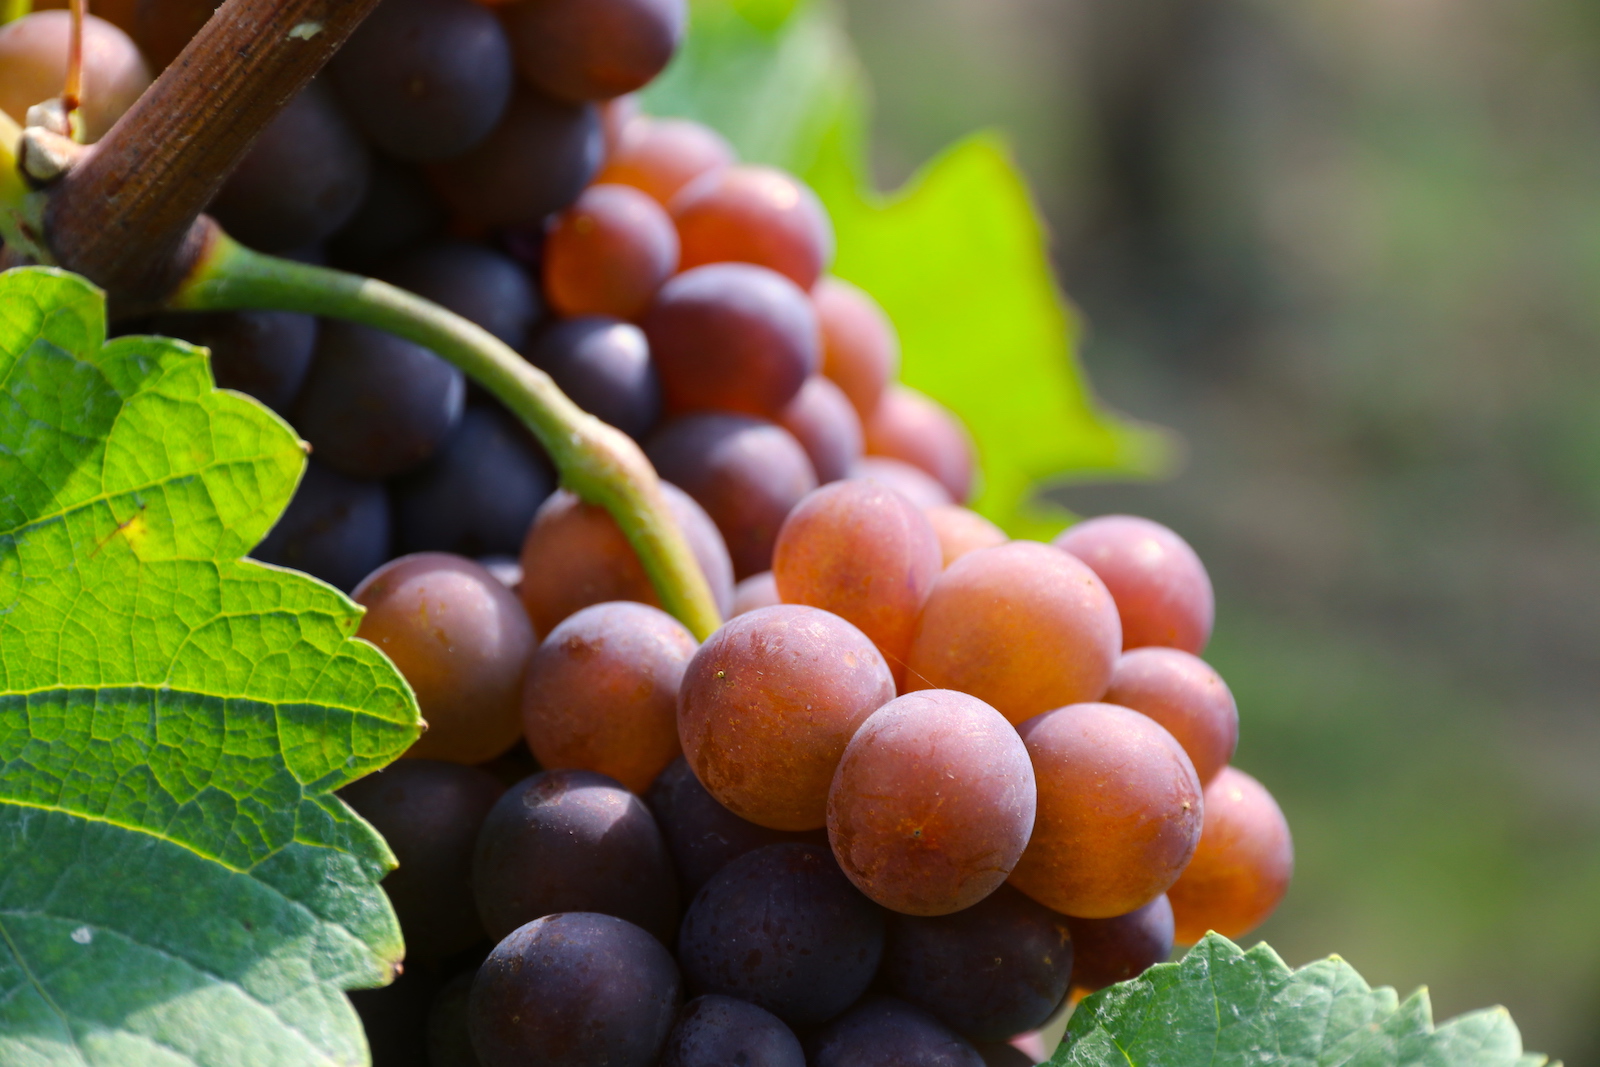 Wijndomein Aldeneyck is specialized in Pinot varieties